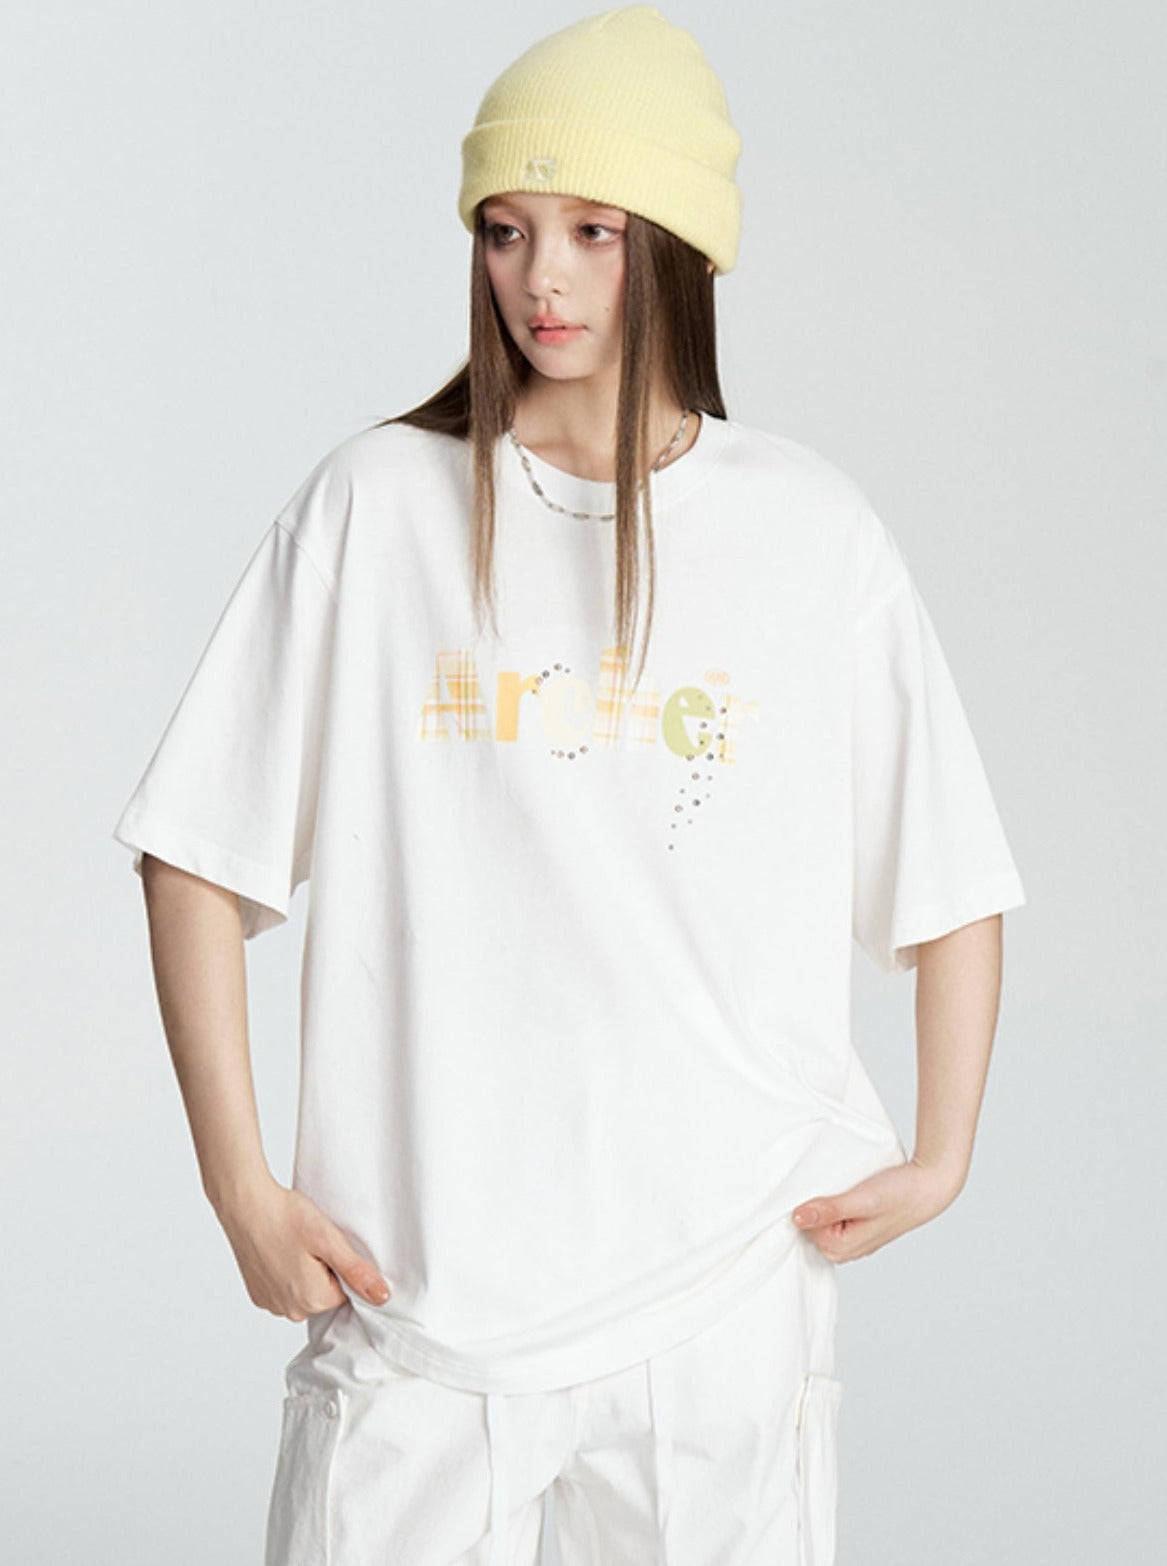 T-Shirt mit Karo-Buchstabenaufdruck